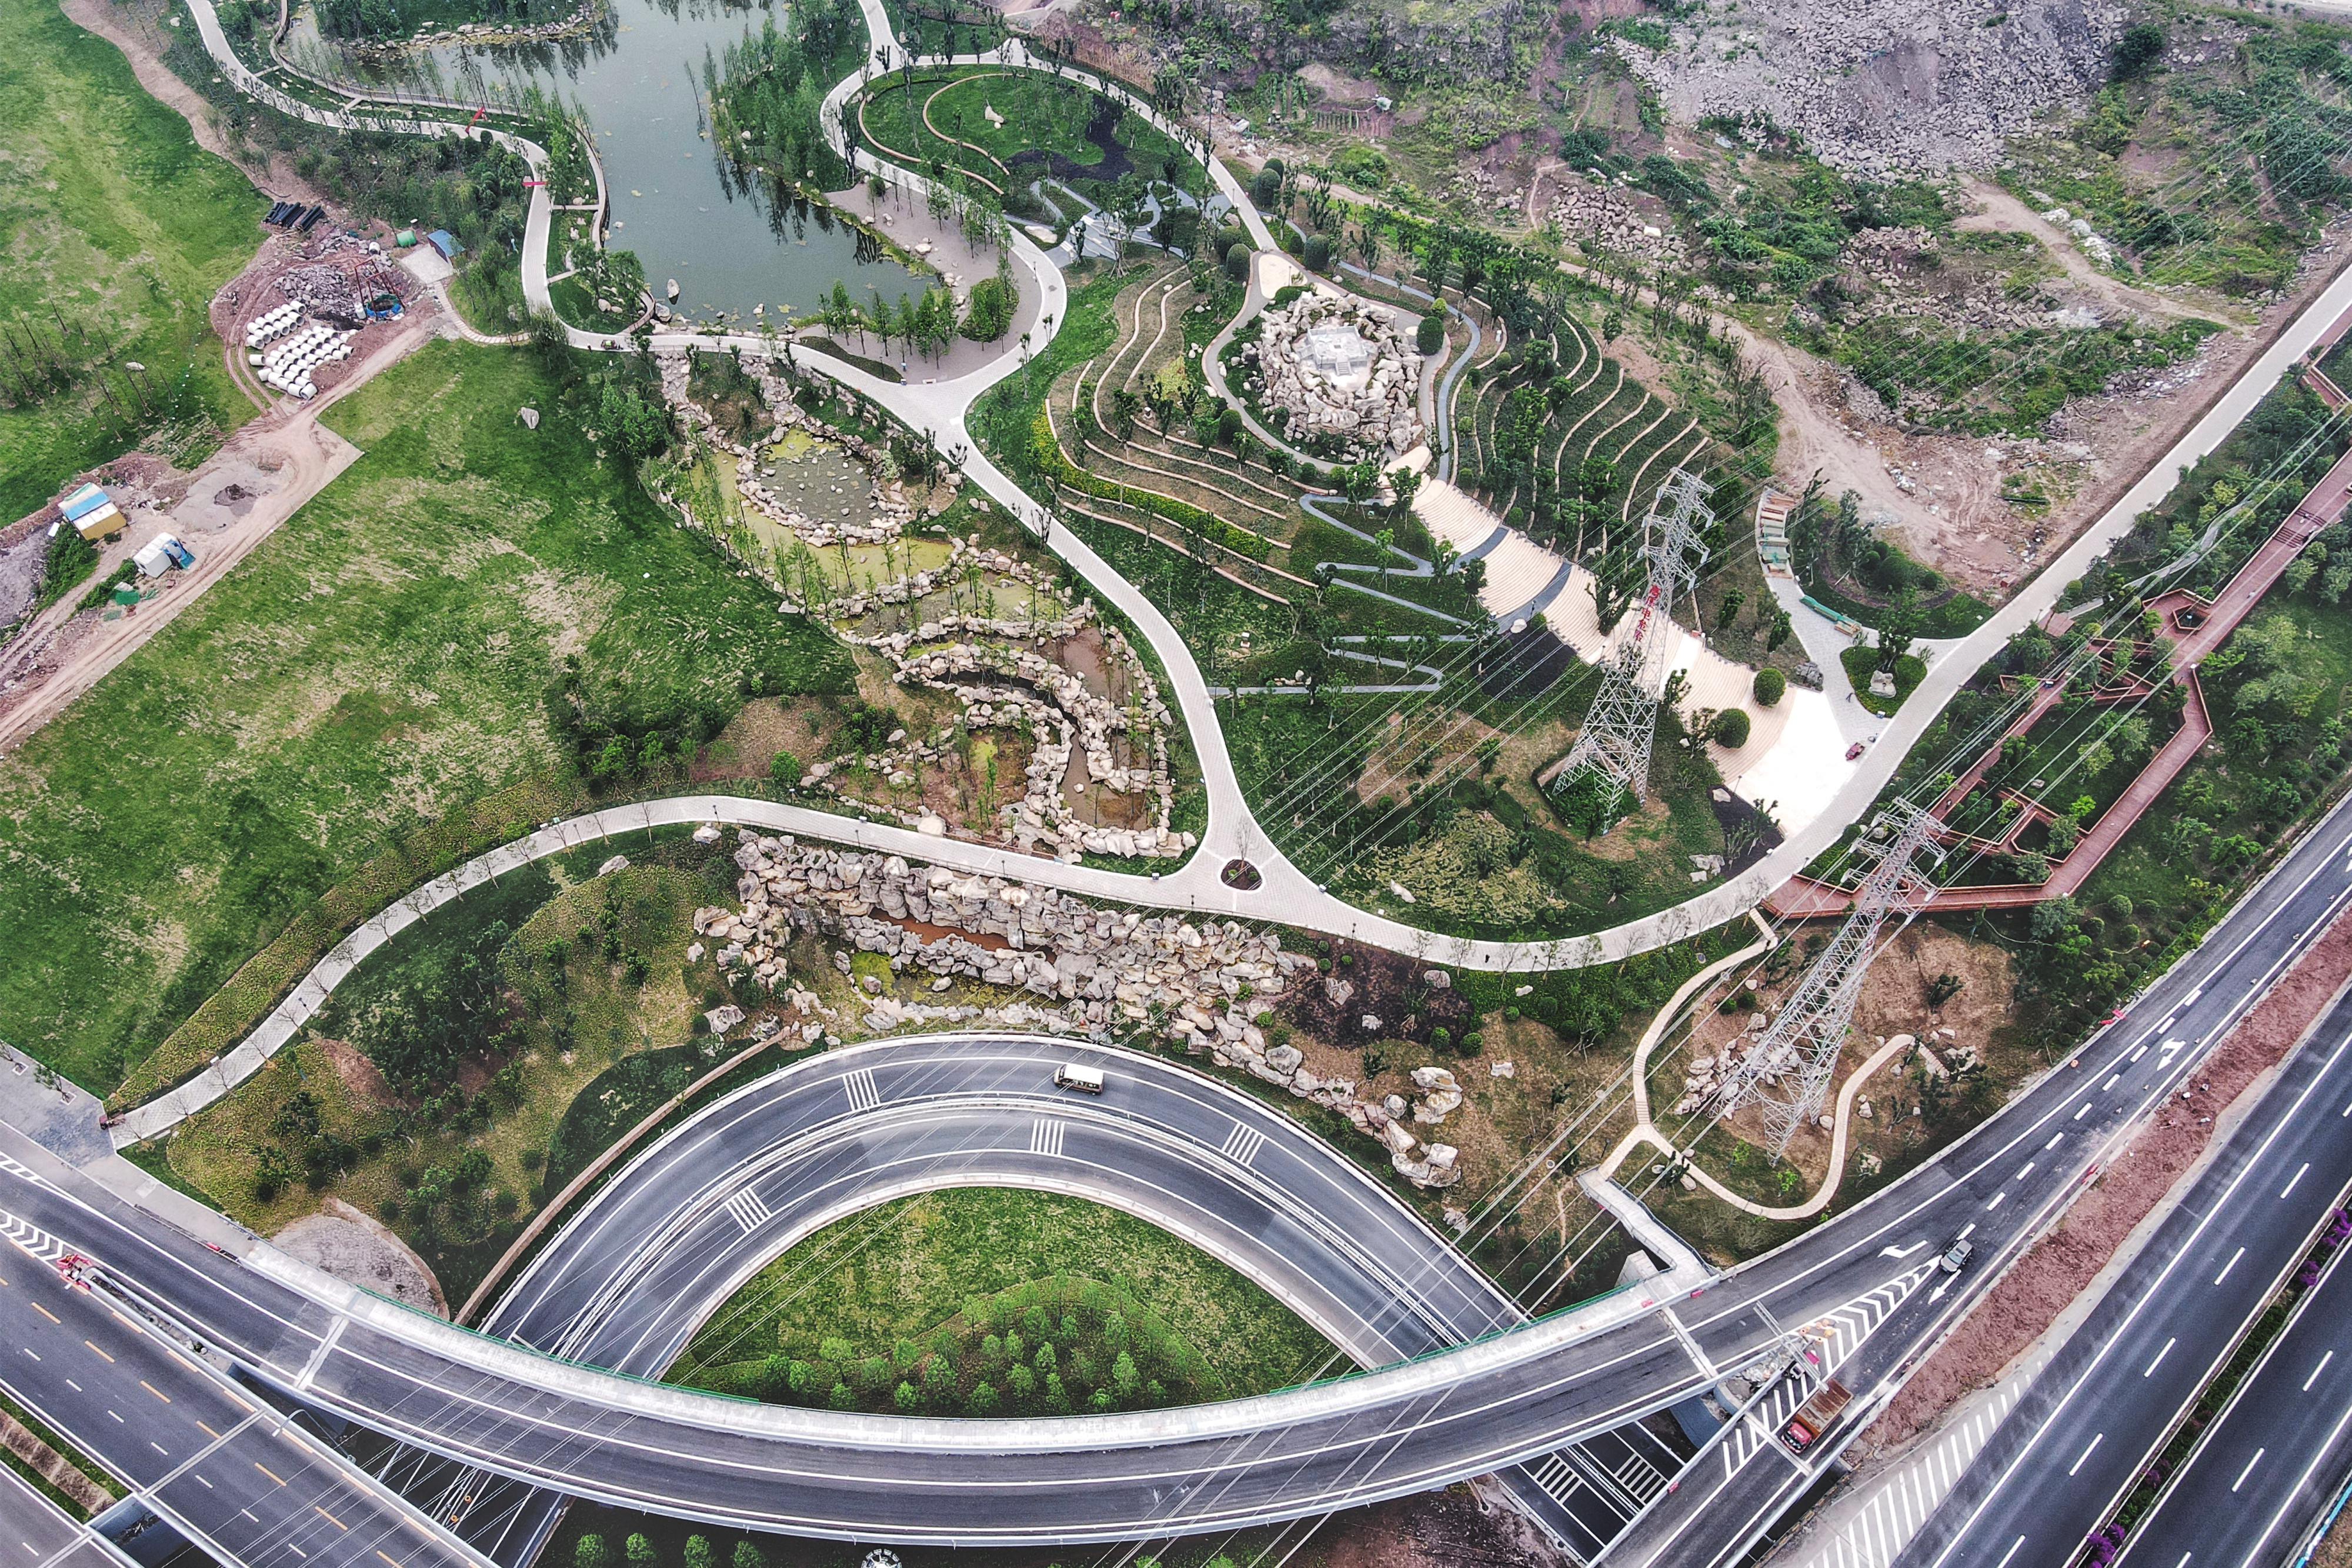 中建八局承建的重庆涪陵新城区高铁片区轴线公园项目竣工